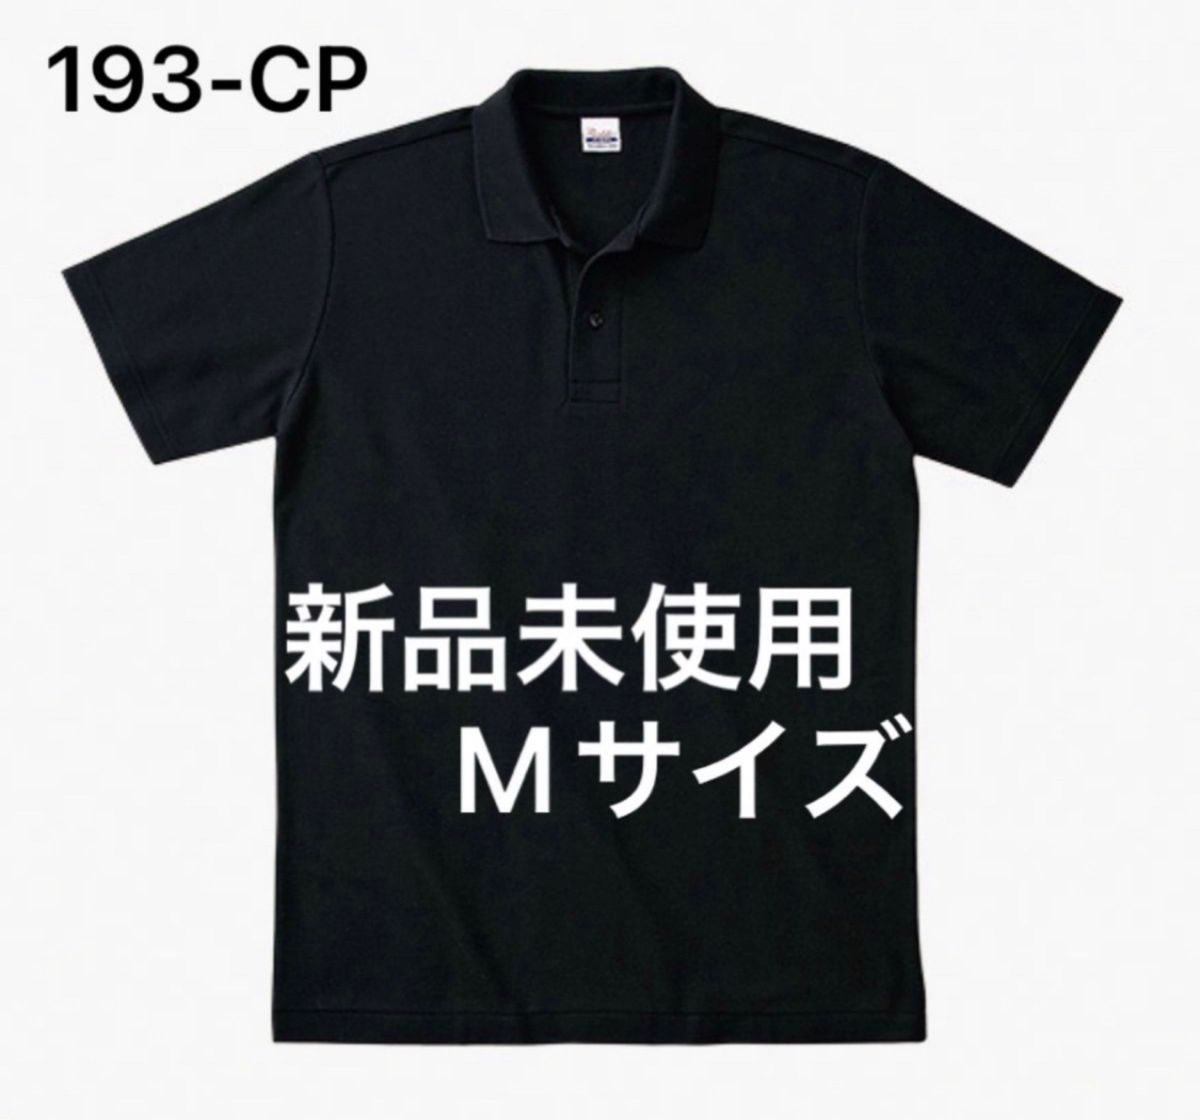 ポロシャツ 鹿の子 半袖 printstar【193-CP】M ブラック【66】